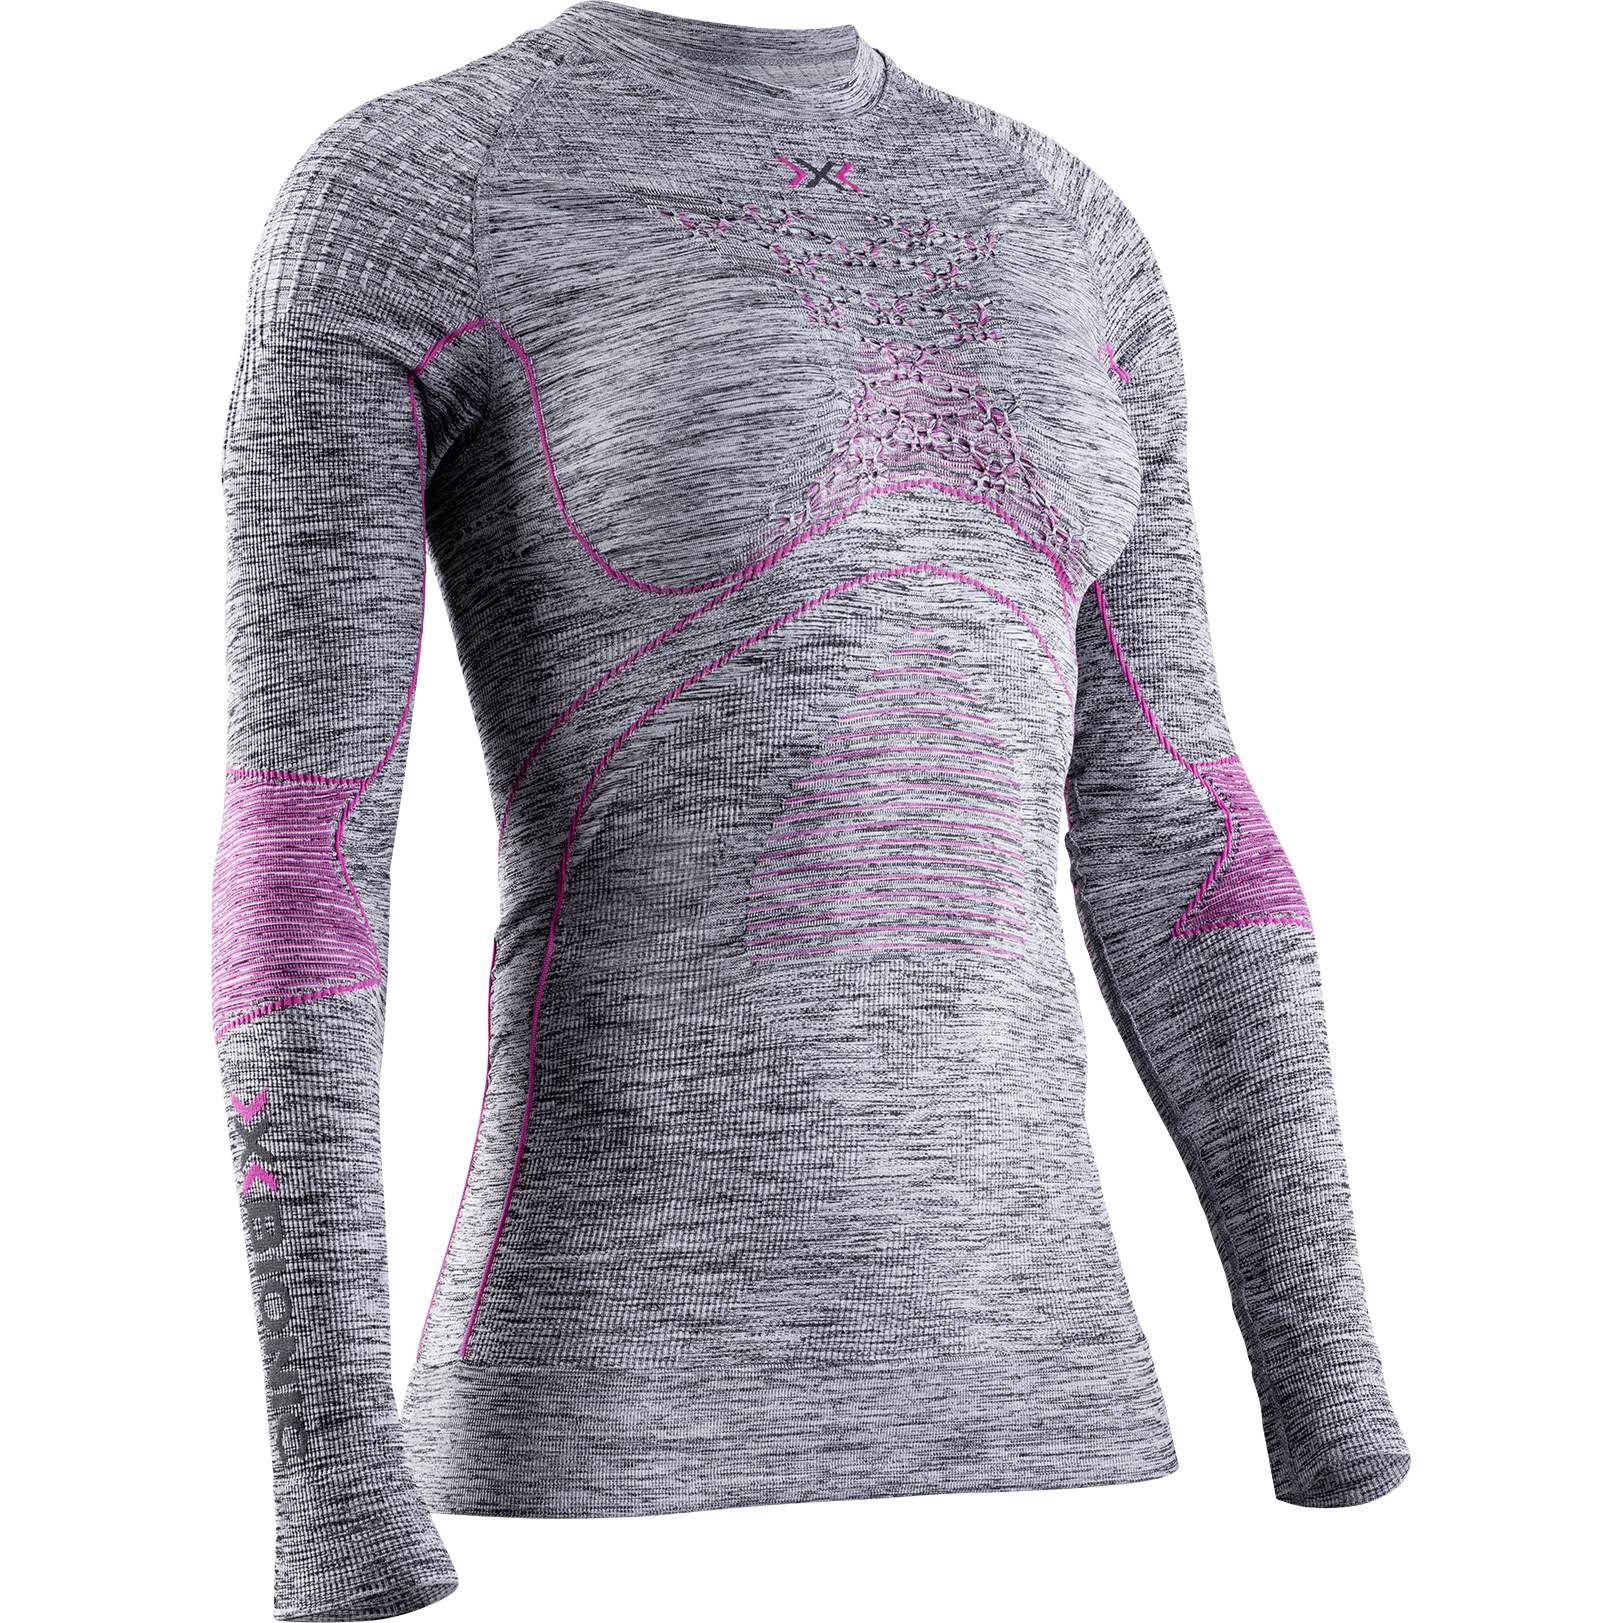 Produktbild von X-Bionic Energy Accumulator 4.0 Melange Langarm-Unterhemd für Damen - grey melange/pink